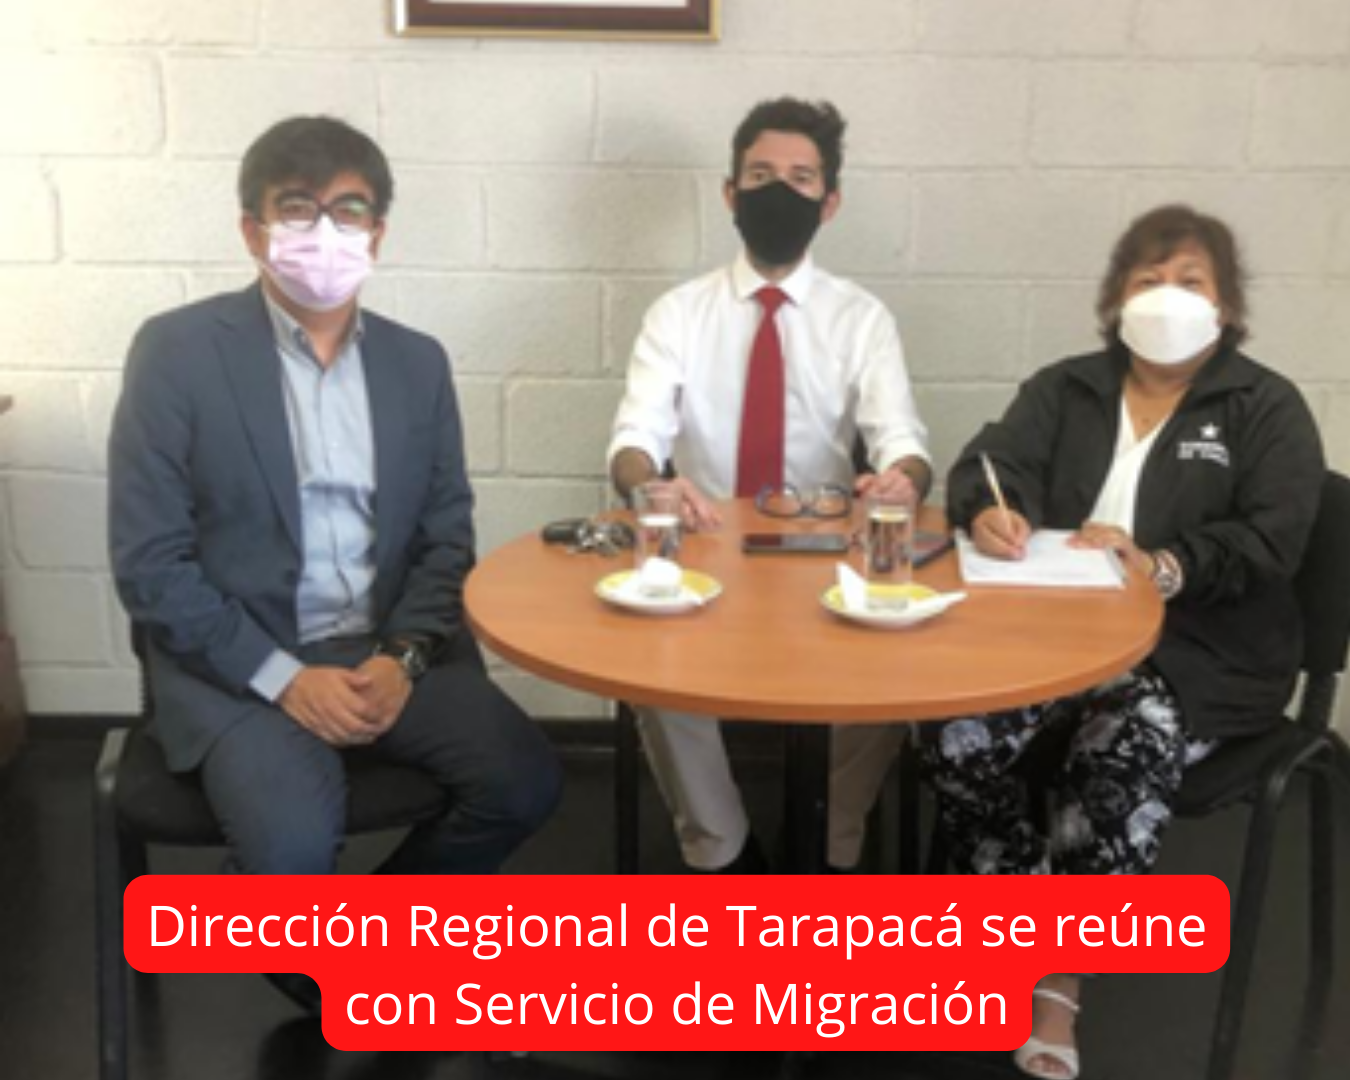 Director Regional de Tarapacá se Reúne con Servicio de Migración